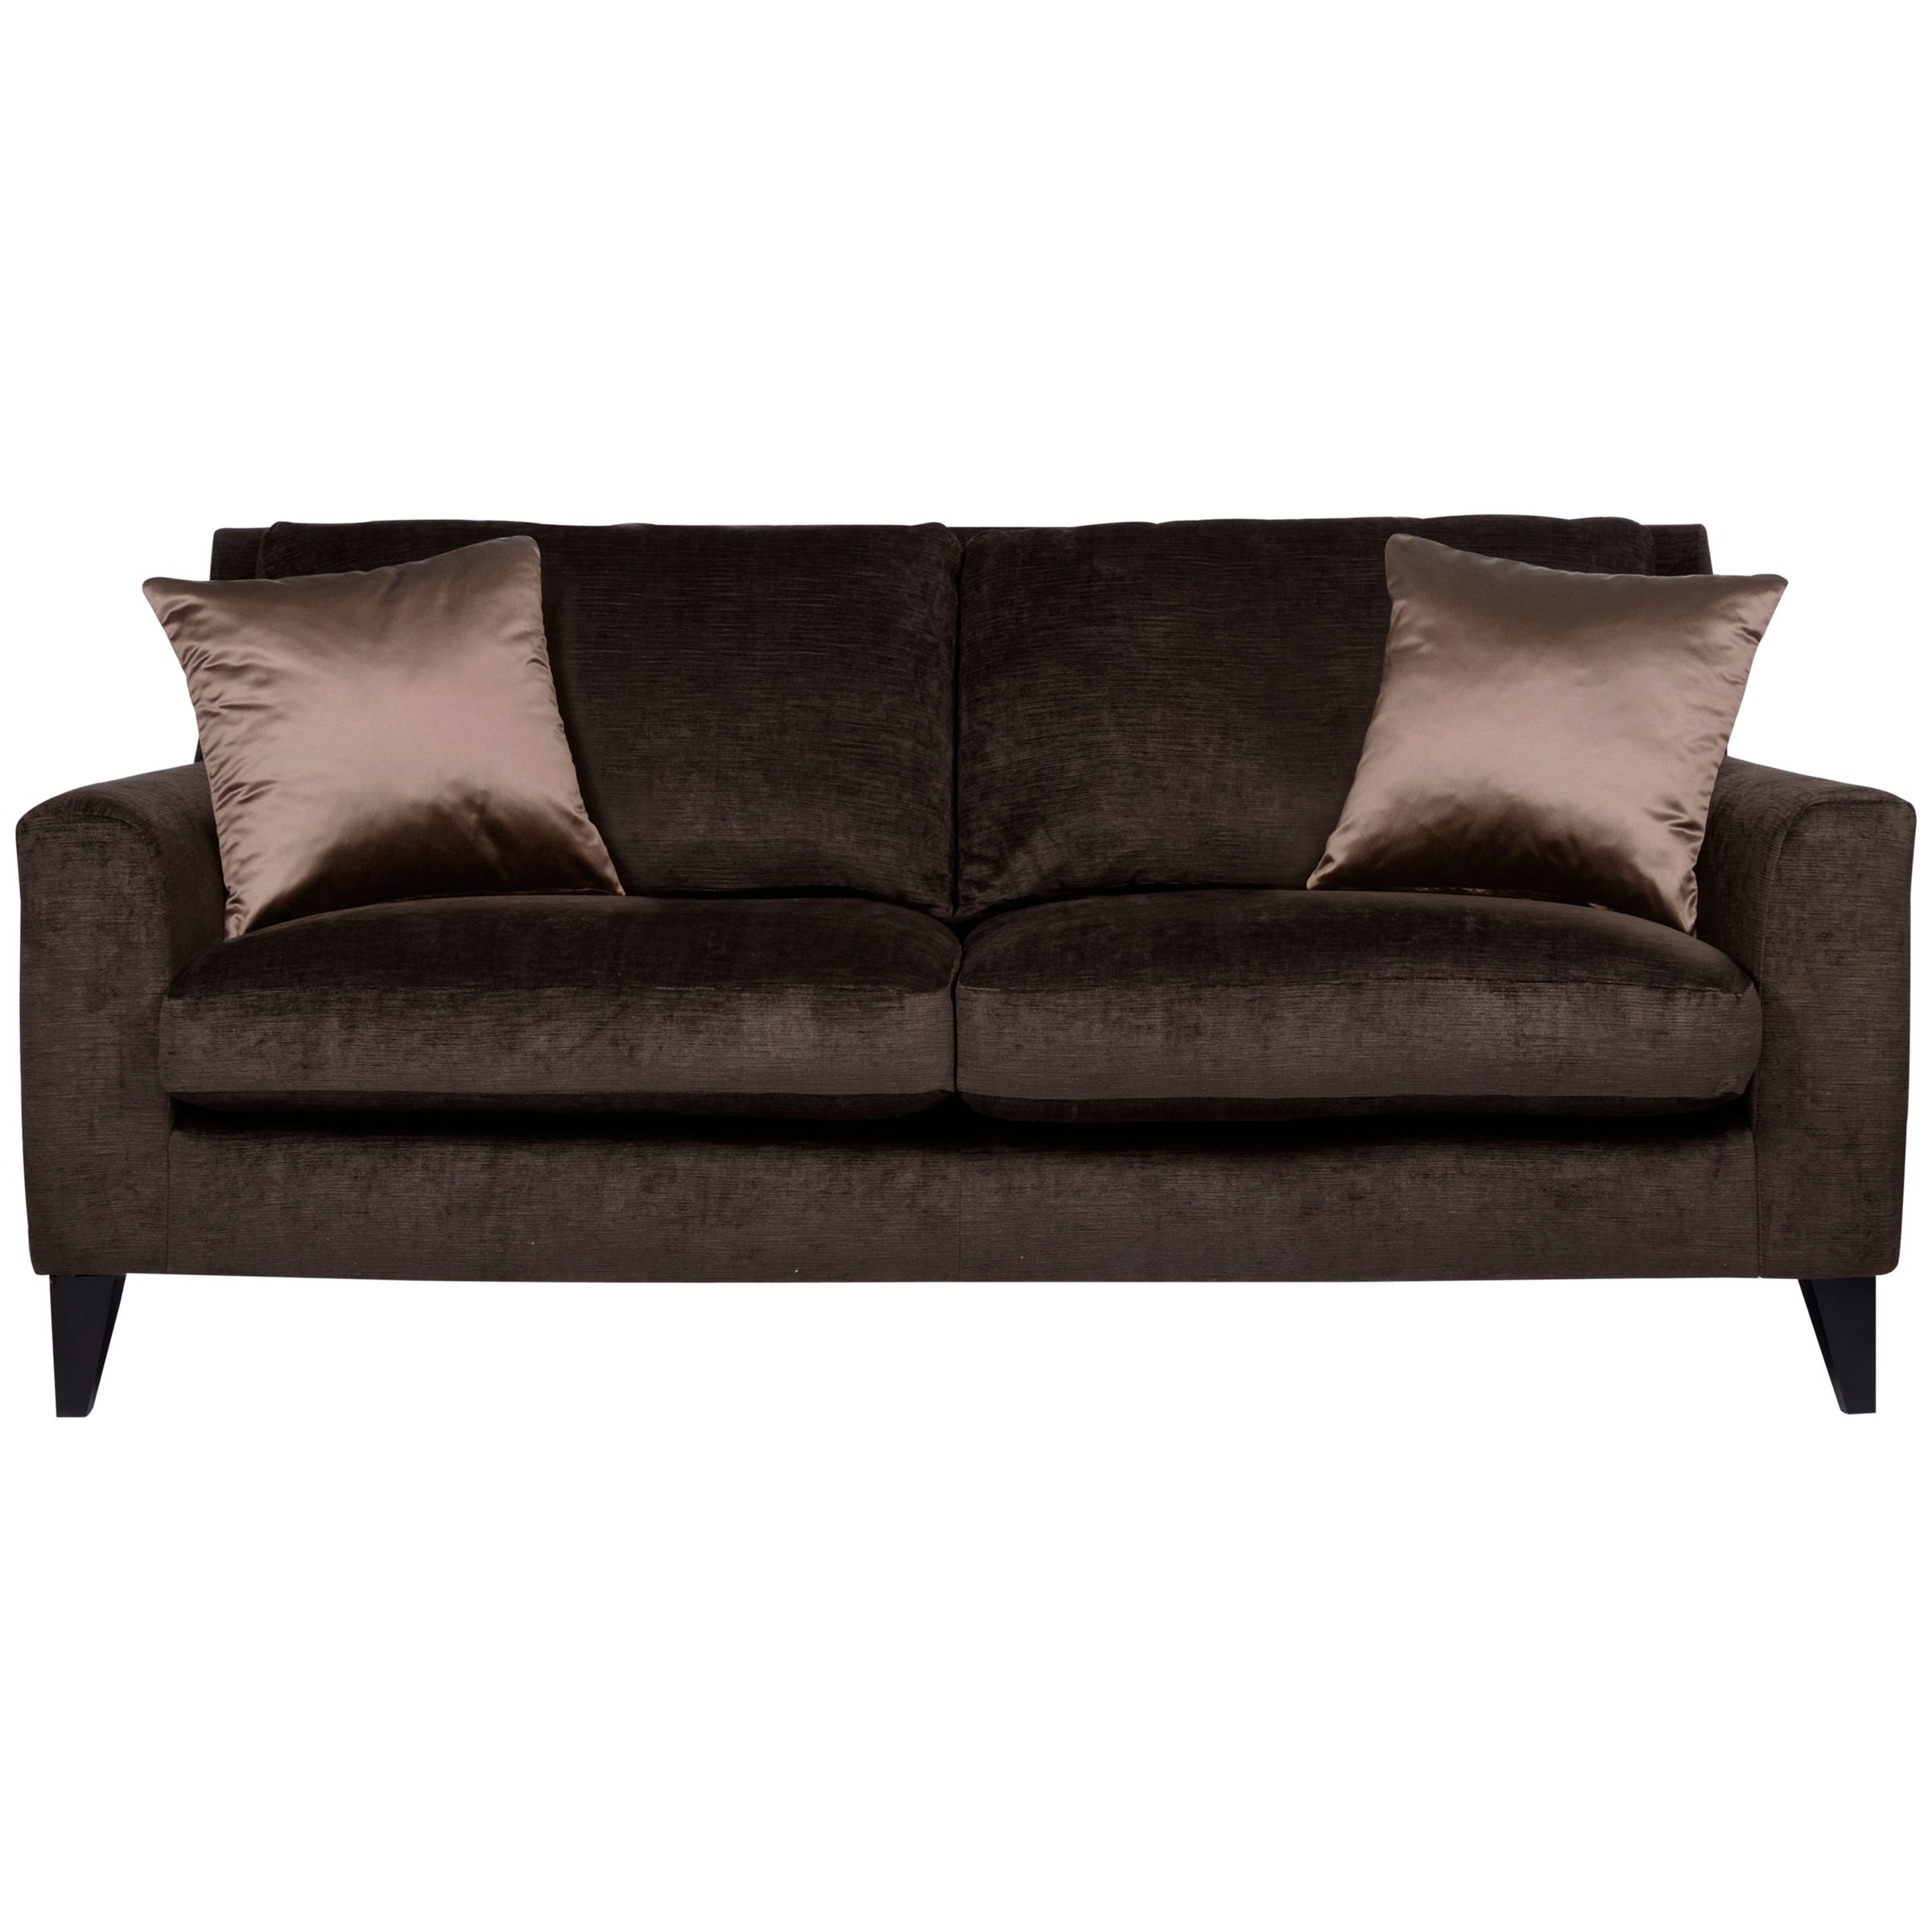 John Lewis Langham Medium Sofa, Velvet in Espresso, width 177cm